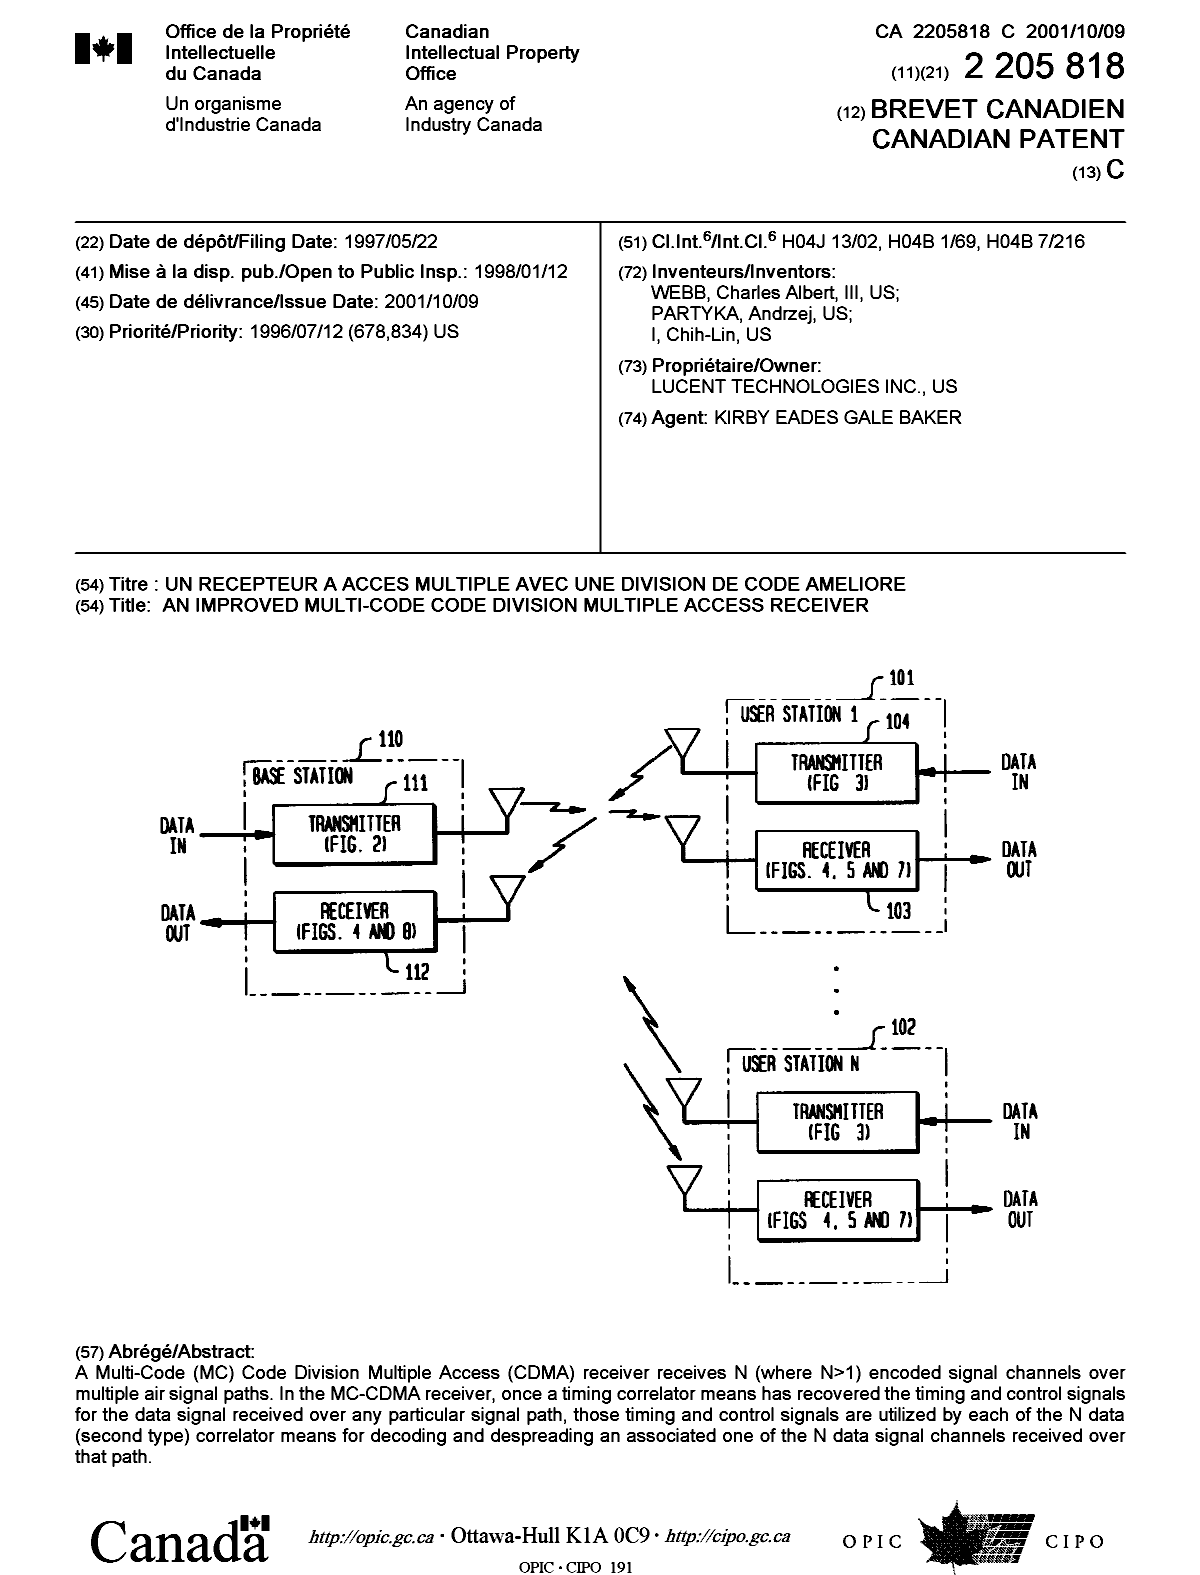 Document de brevet canadien 2205818. Page couverture 20010925. Image 1 de 1